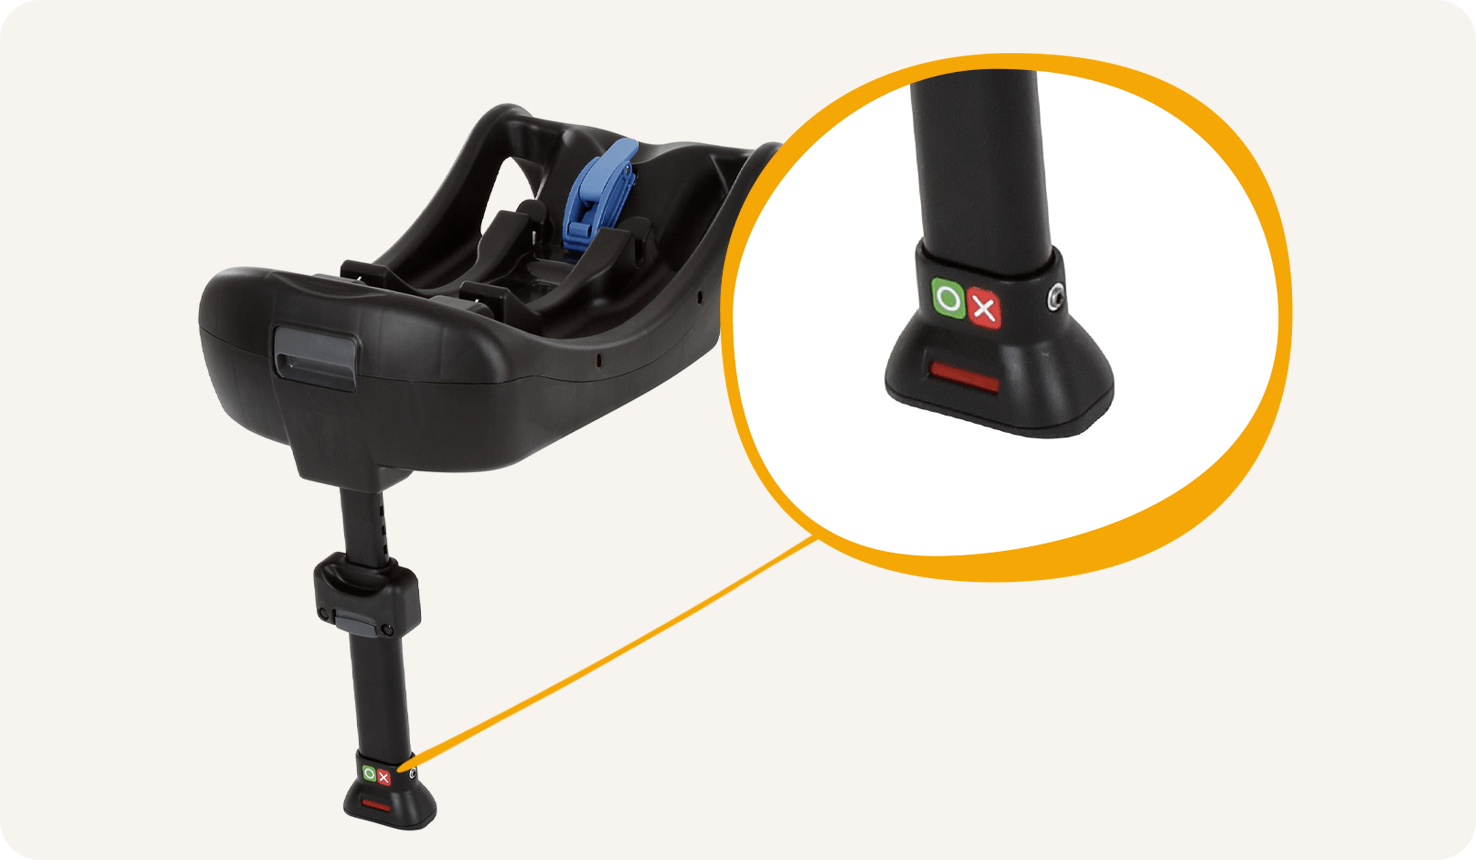 Socle pour siège auto Joie clickFIT vue en angle, avec gros plan sur l’indicateur d’installation de la jambe de force.